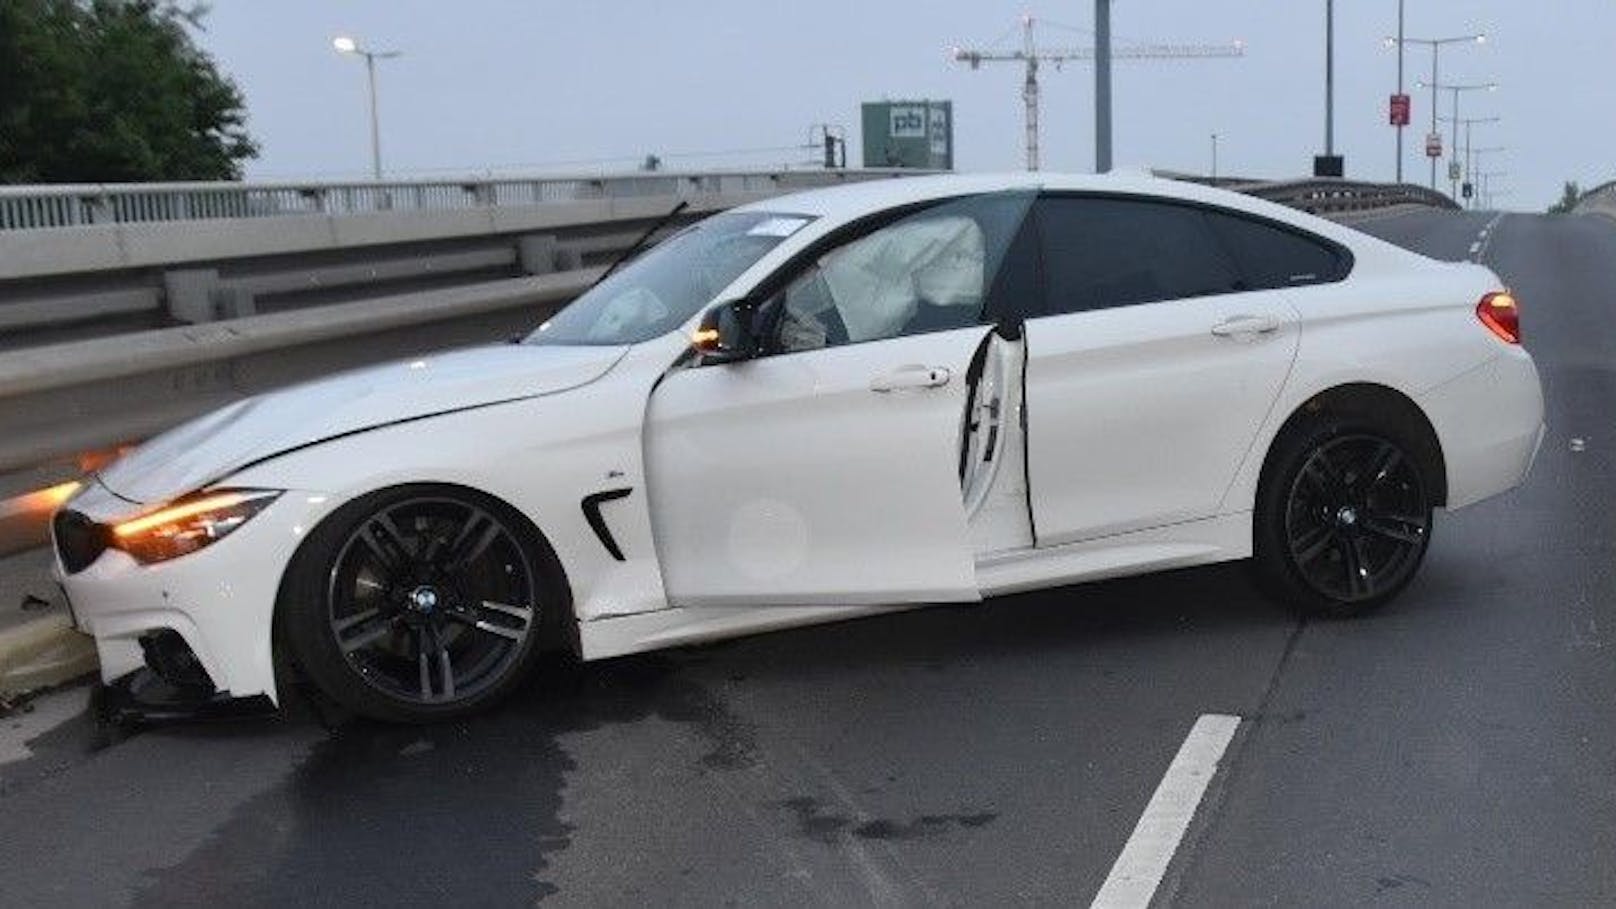 Durch den Aufprall soll sich der BMW überschlagen haben. Sowohl der 26-jährige Lenker des Autos als auch der 24-jährige Beifahrer wurden bei dem Unfall verletzt.